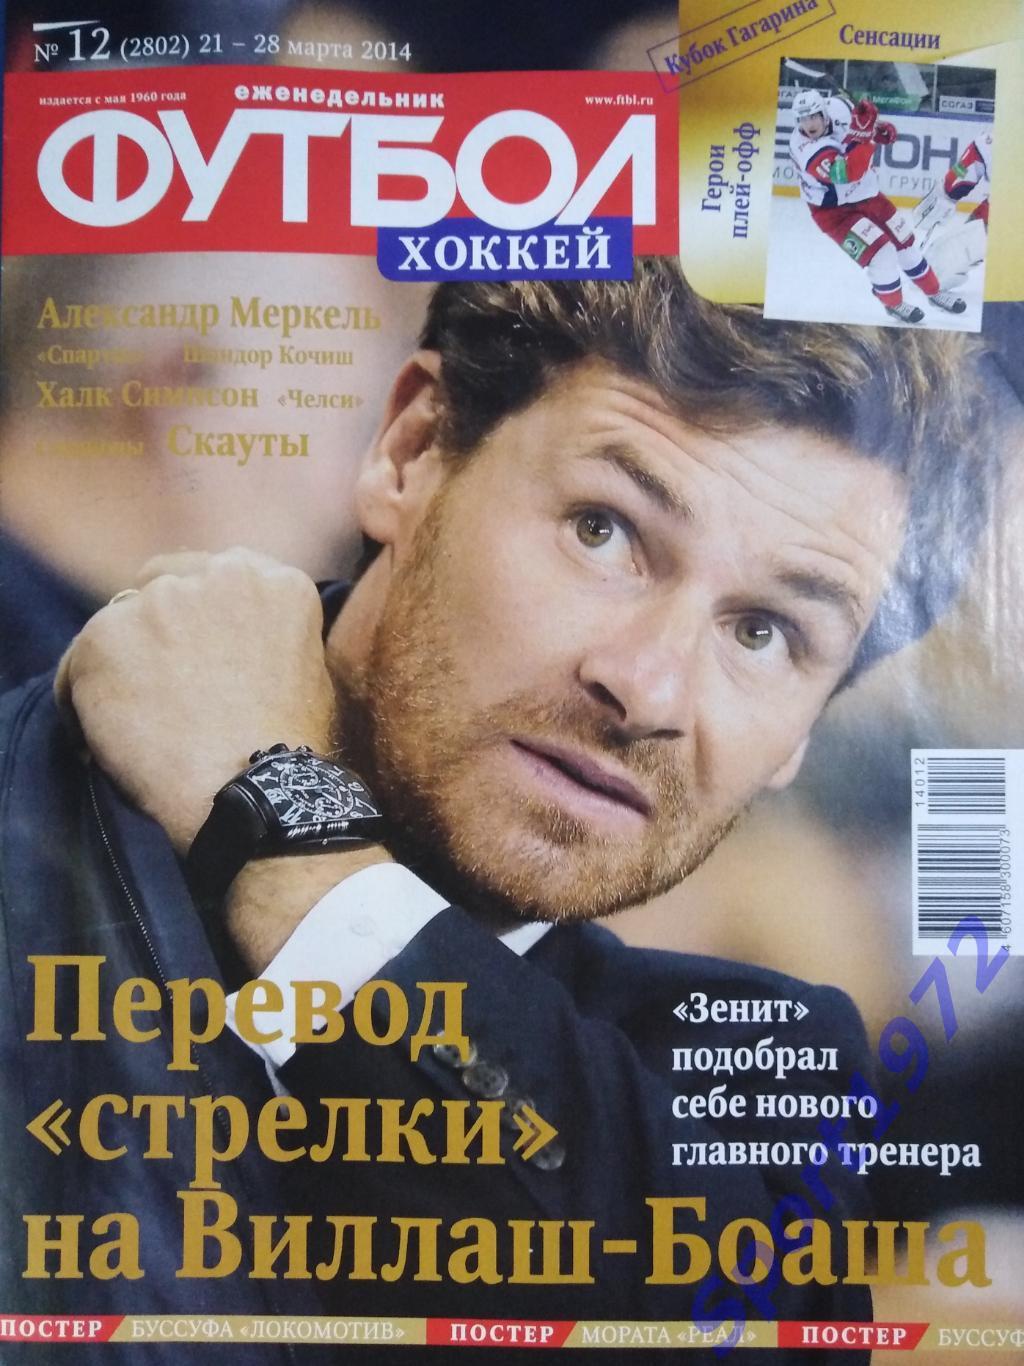 Еженедельник Футбол. №12 - 2014.